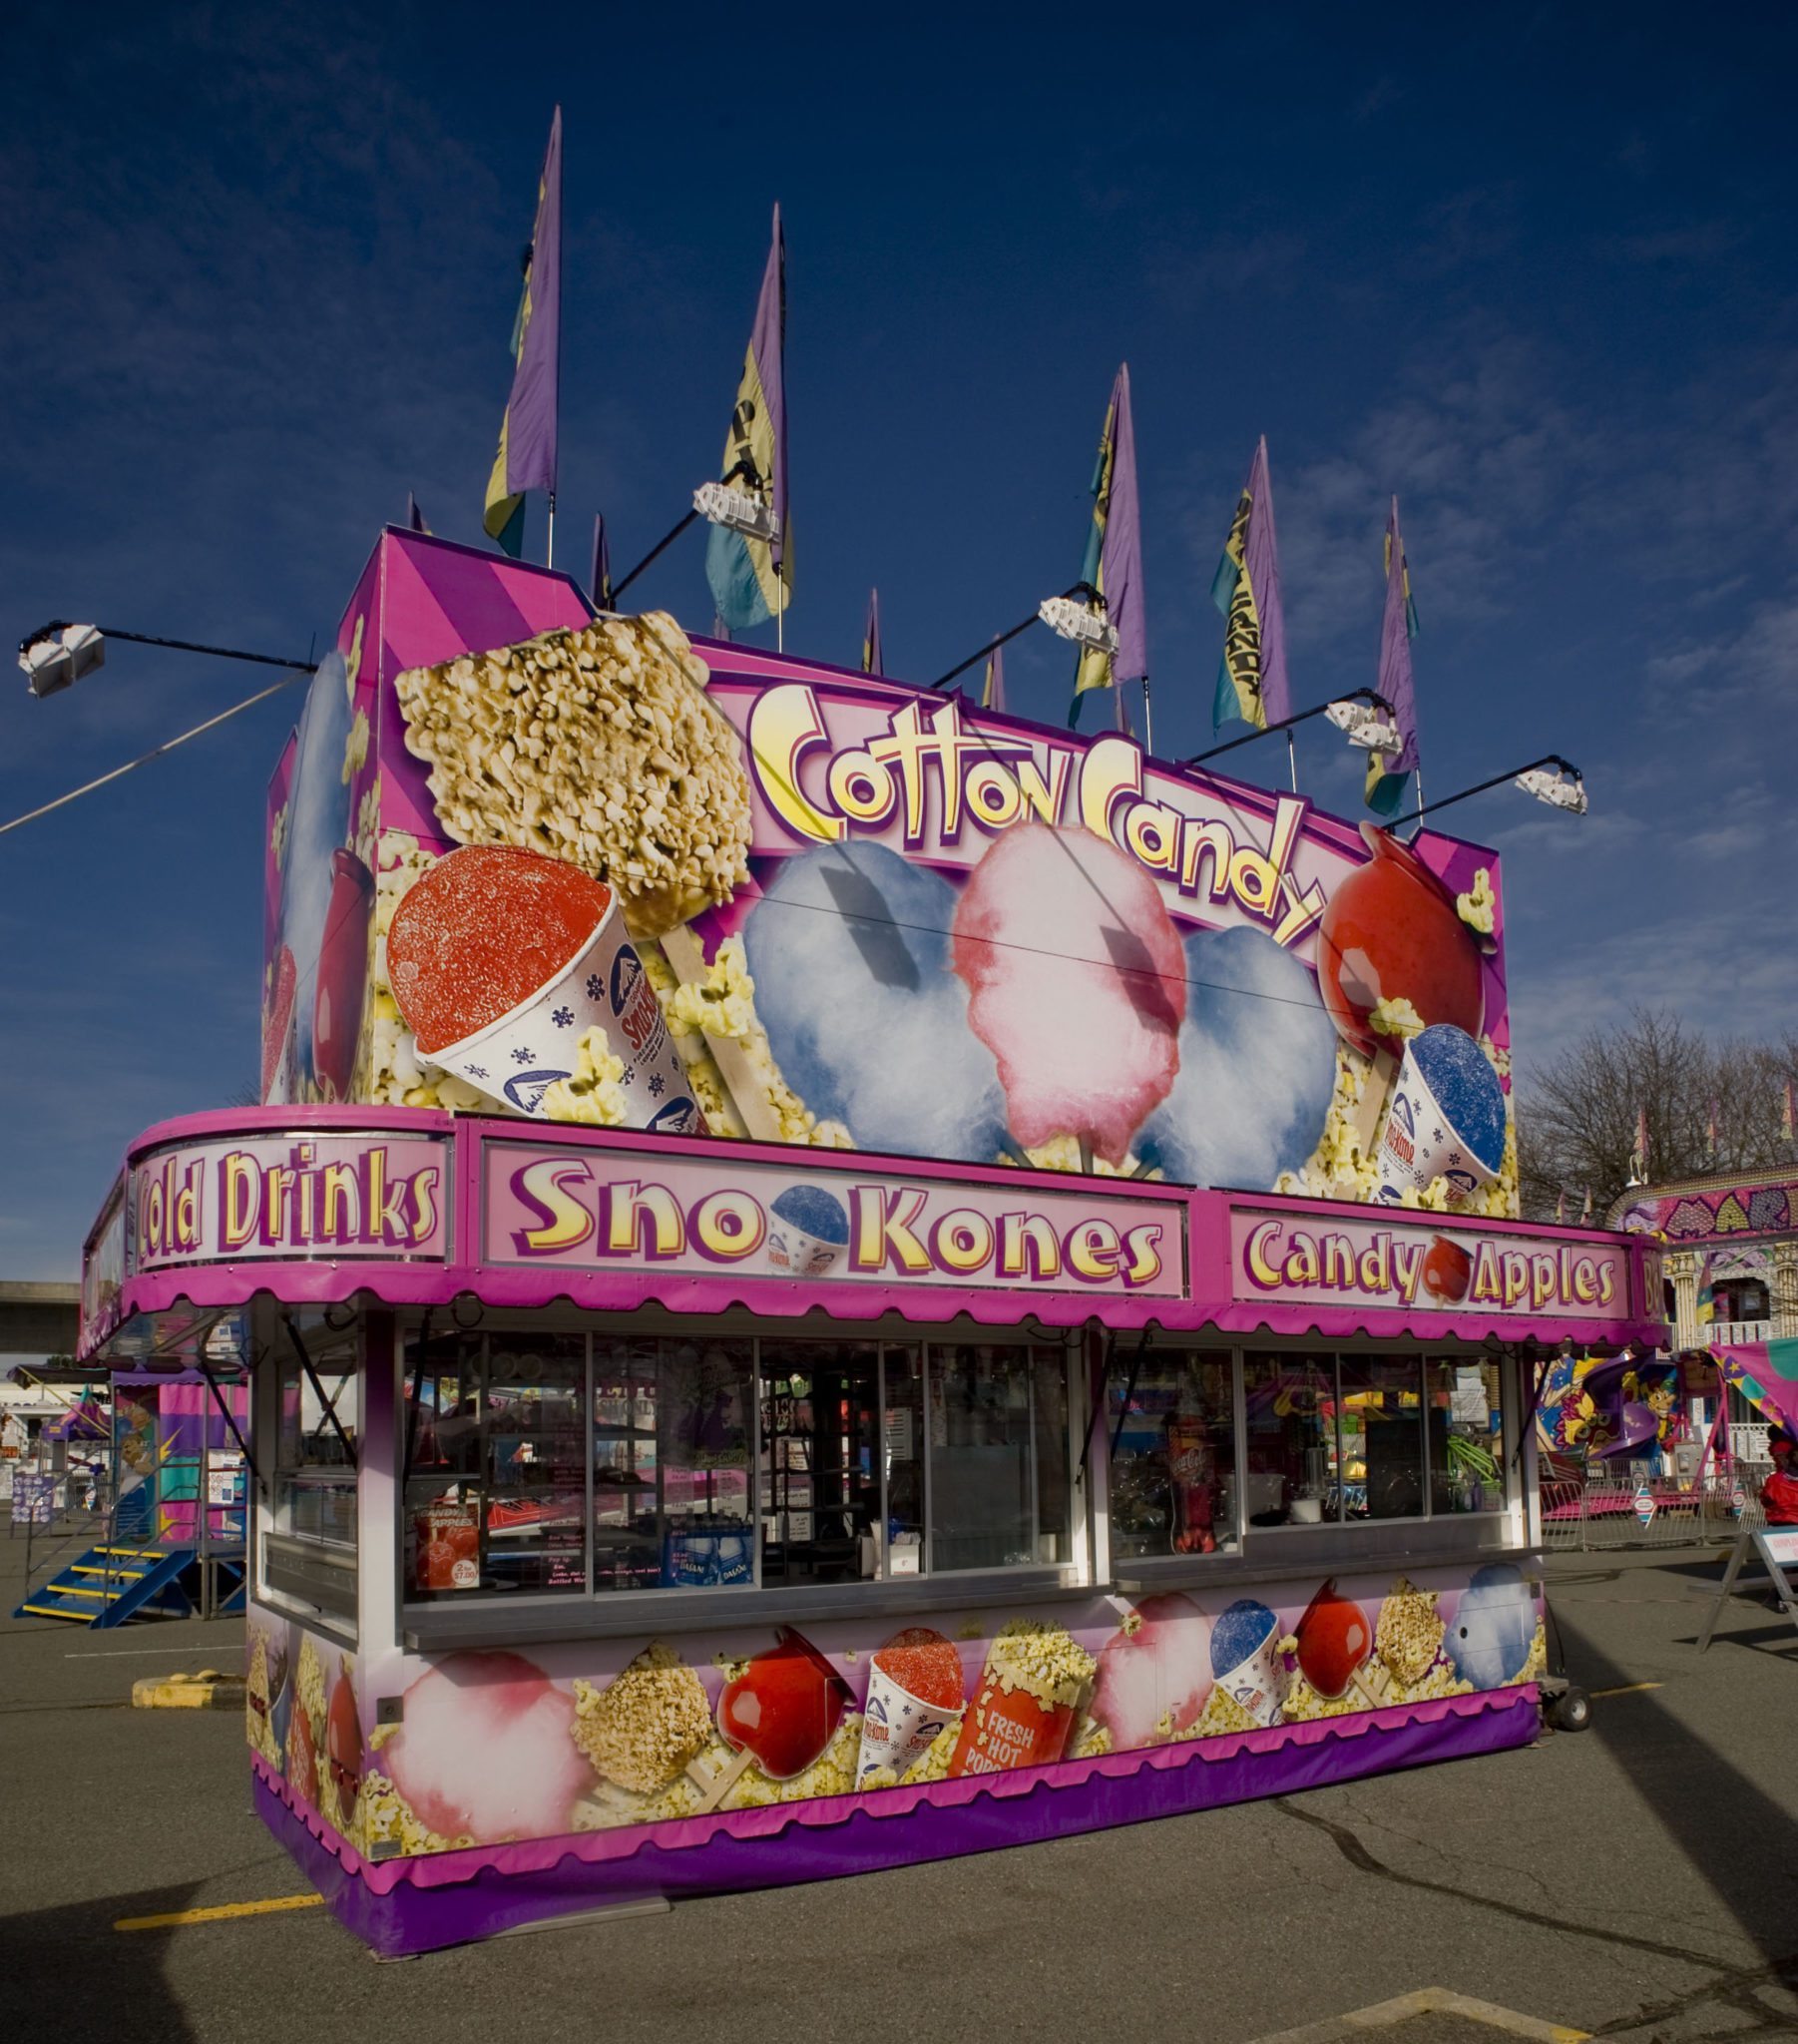 Un stand alimentaire offre de la barbe à papa, du maïs soufflé, des pommes glacées, des cornets de glace et des boissons froides; le stand est rose et violet, et est couvert de dessins colorés de gourmandises